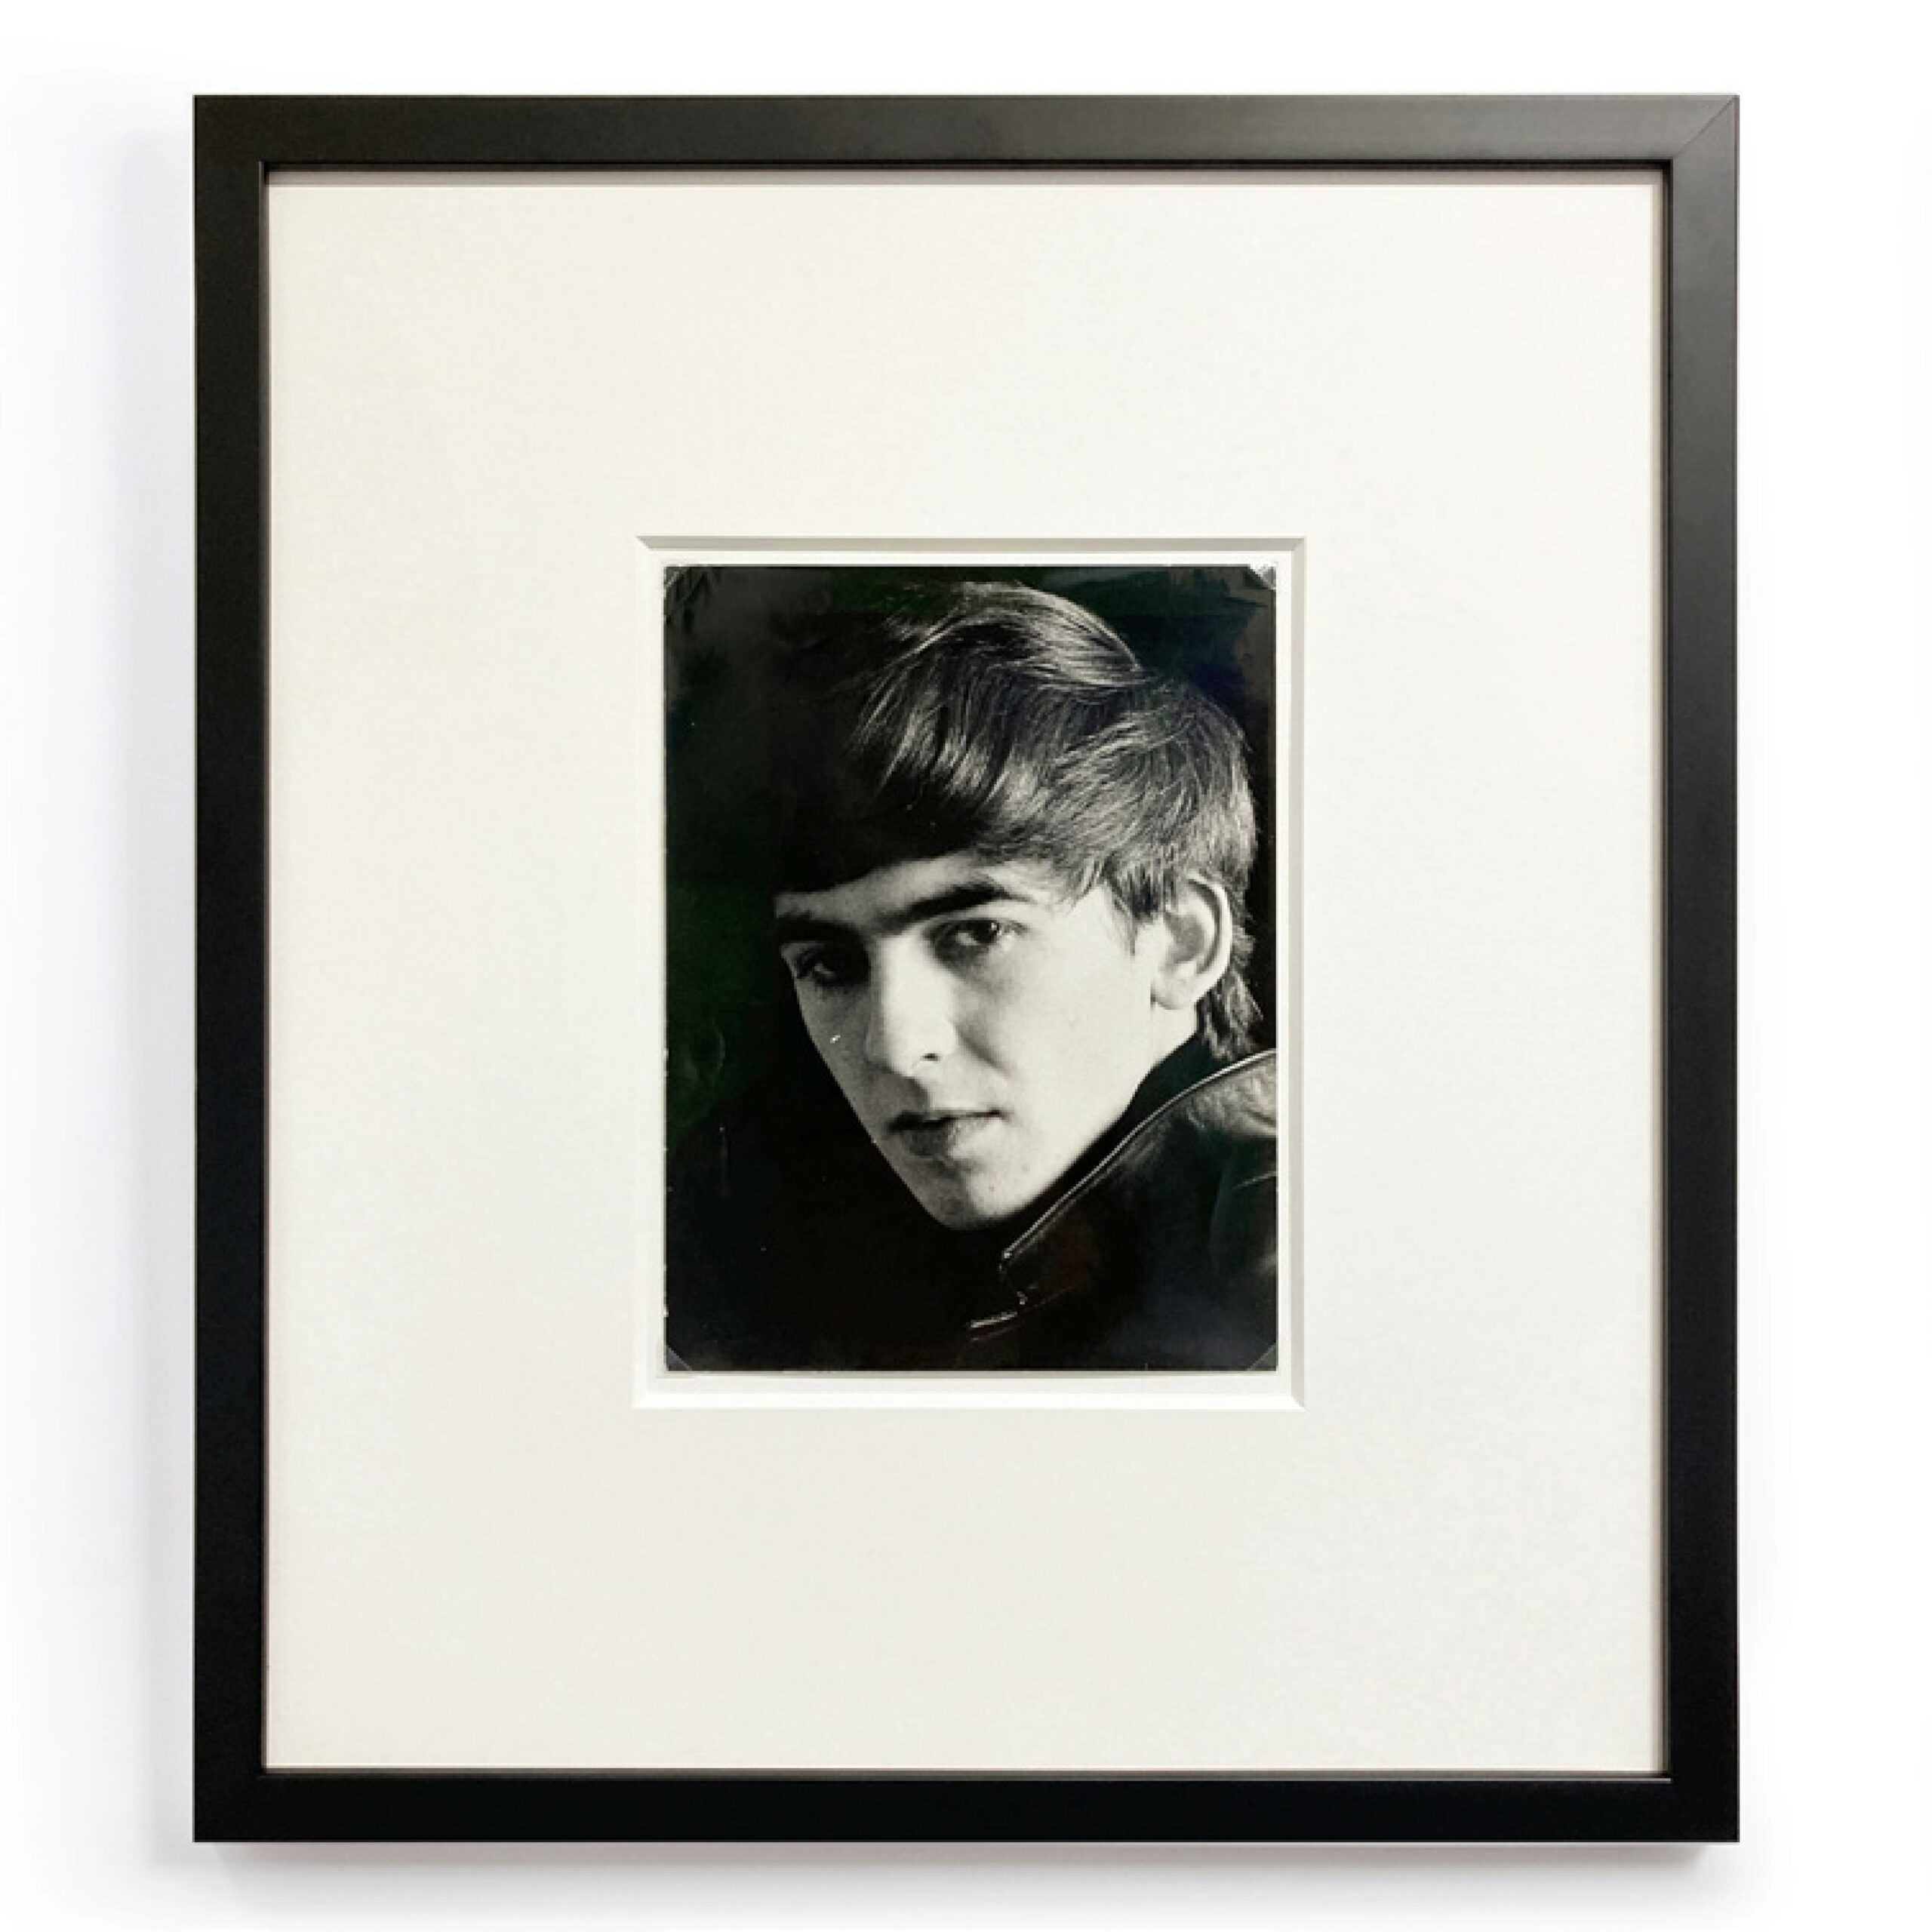 George Harrison by Astrid Kirchherr